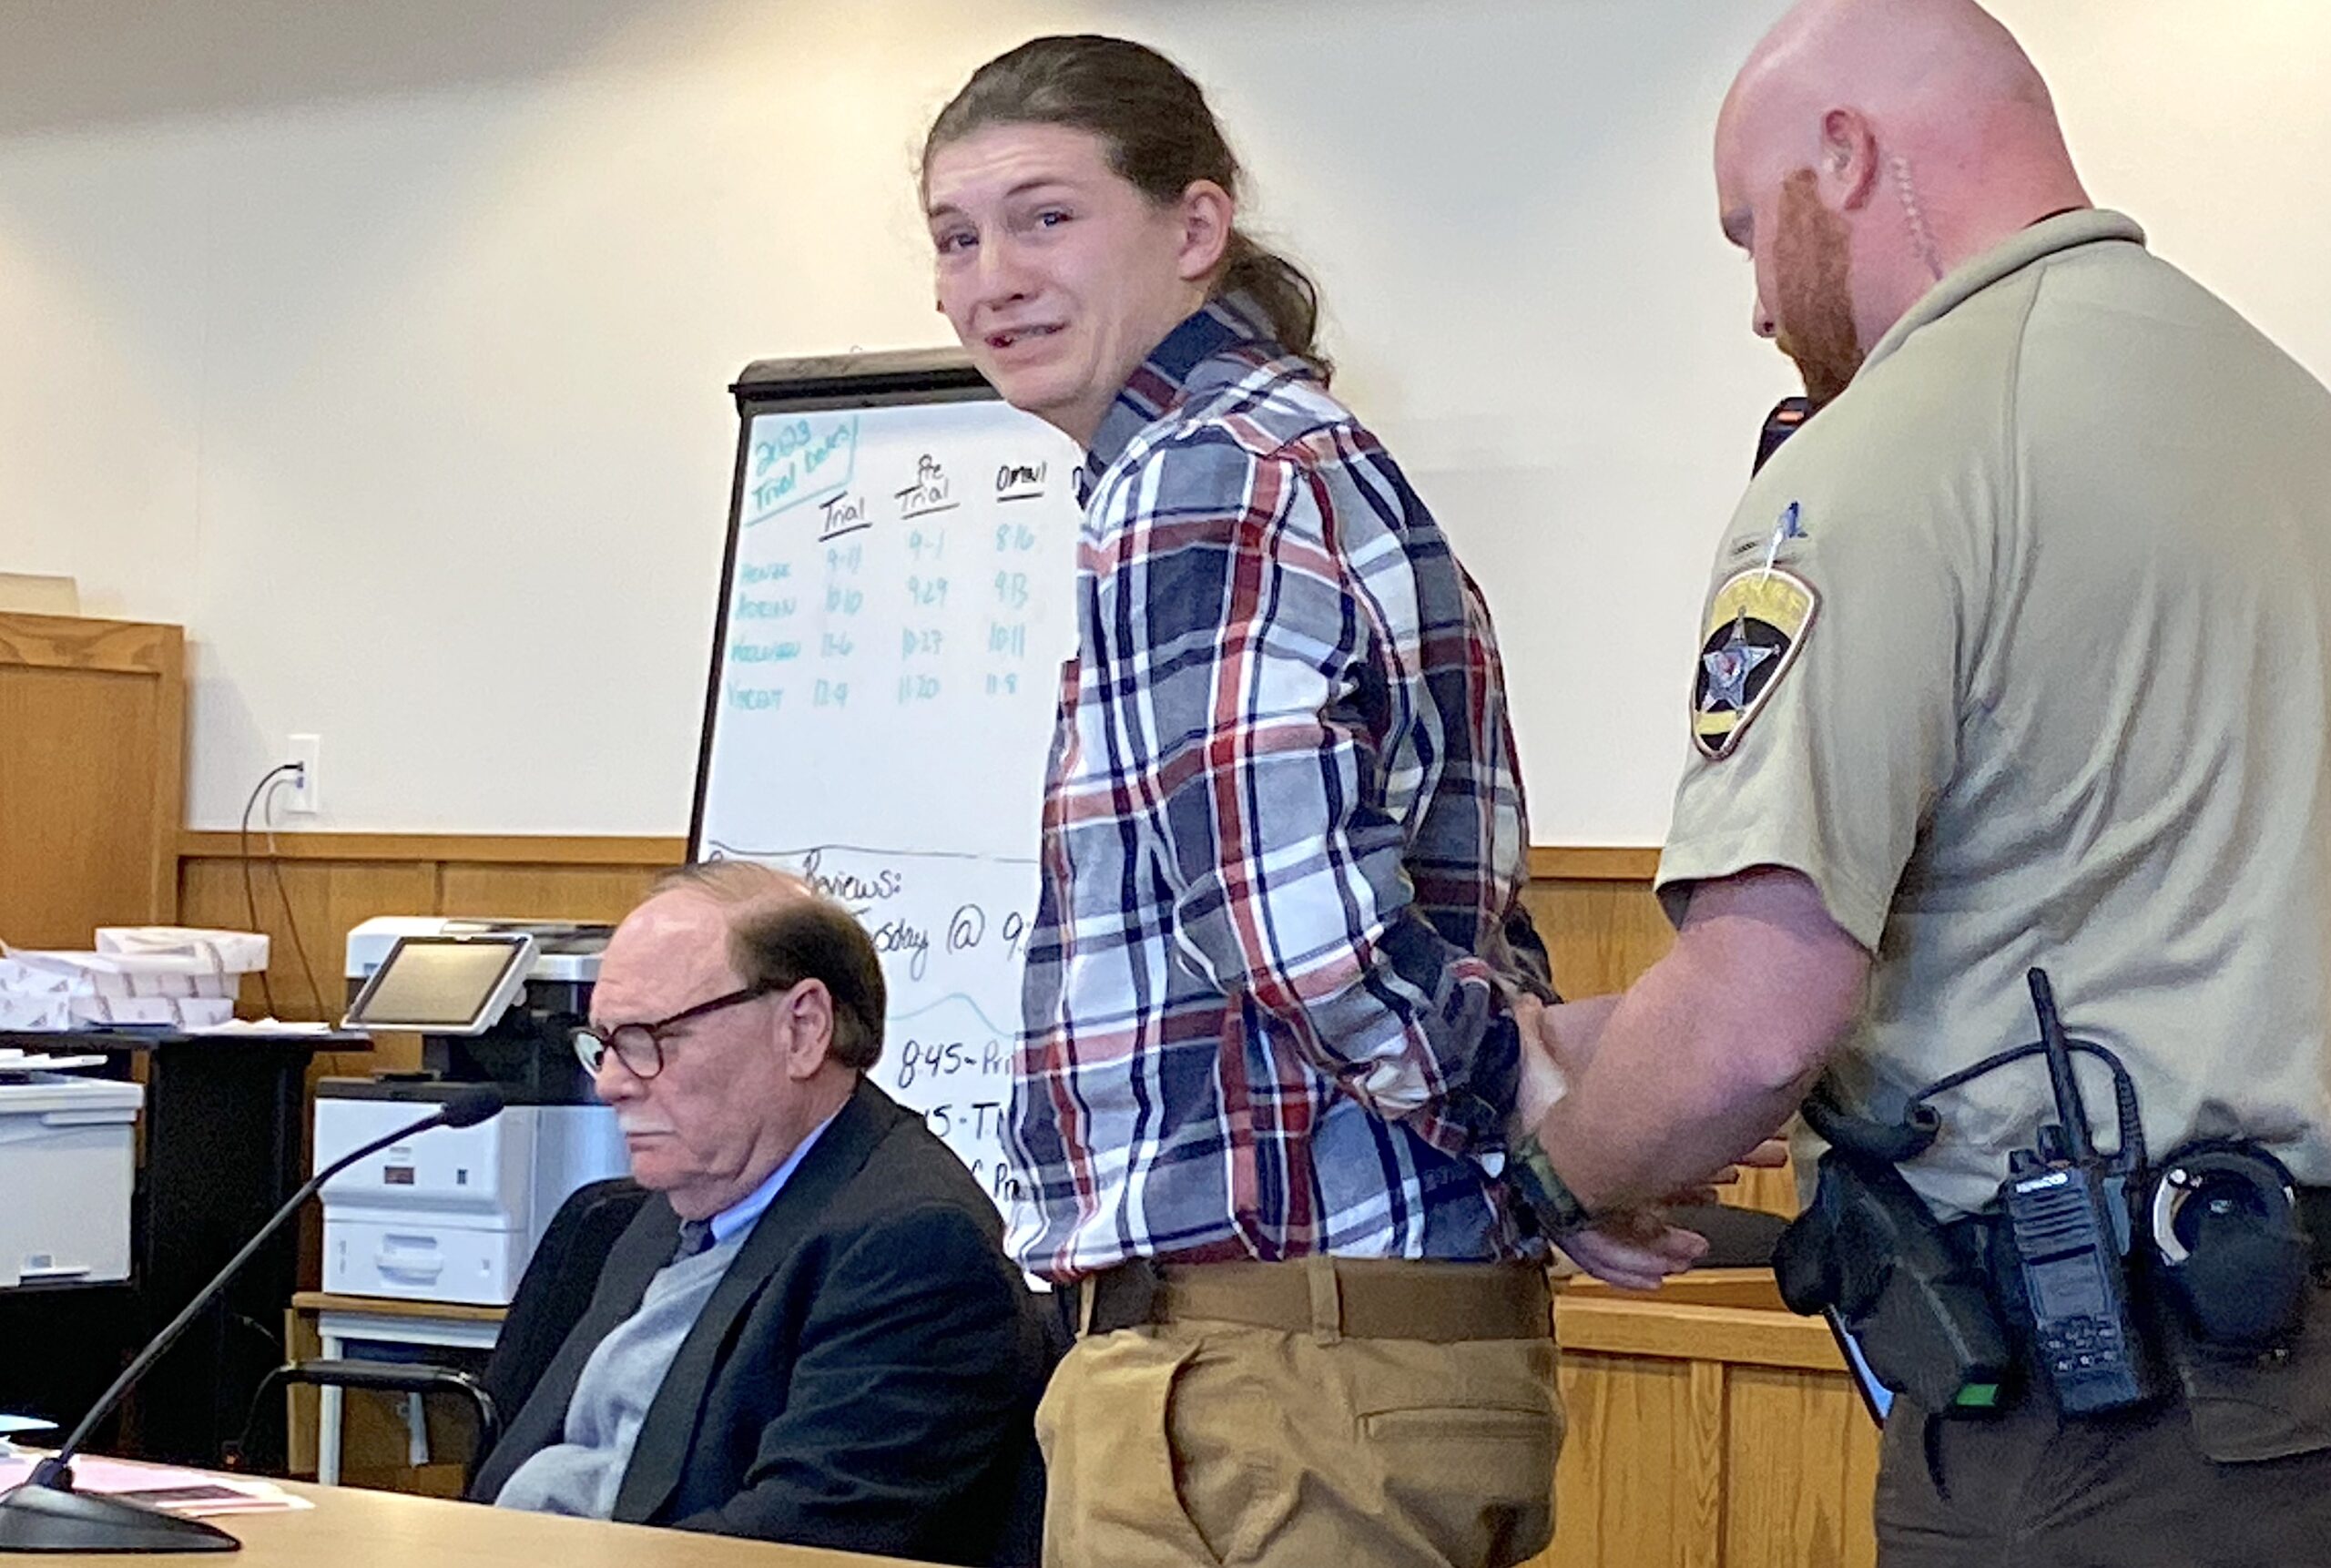 Aaron Gallaher sentencing